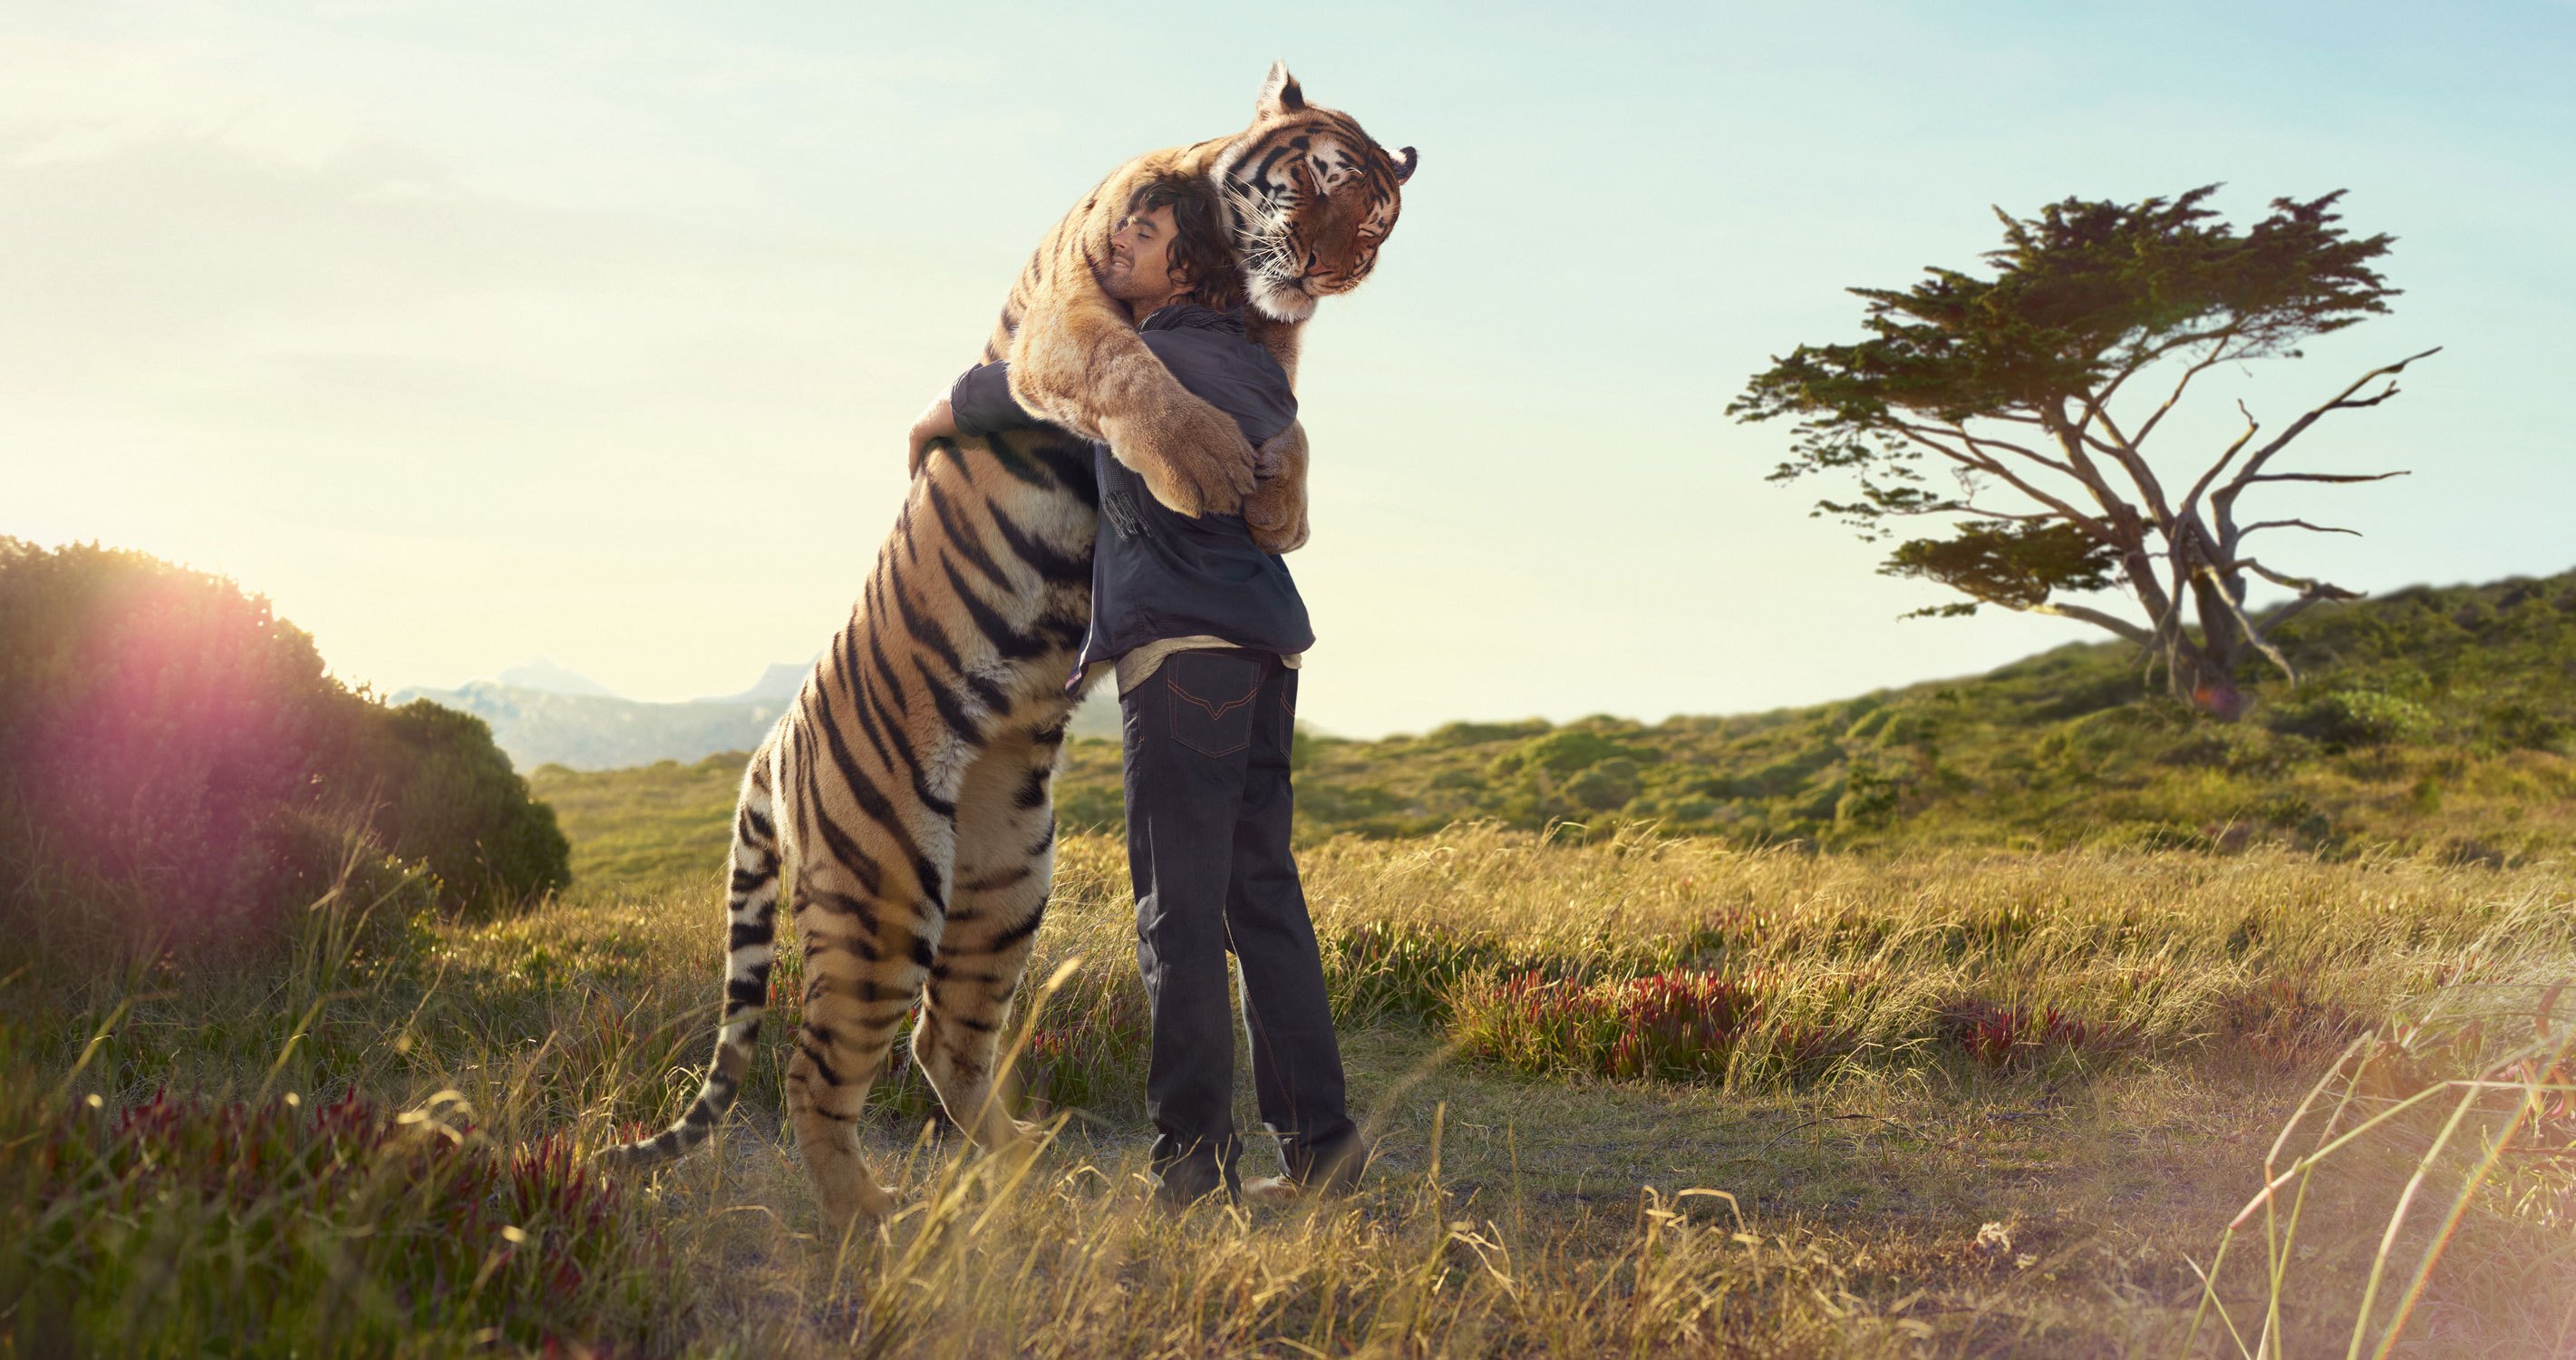 tiger, Man, Hug, Meeting, Print, Tree, Field, Friend Wallpaper